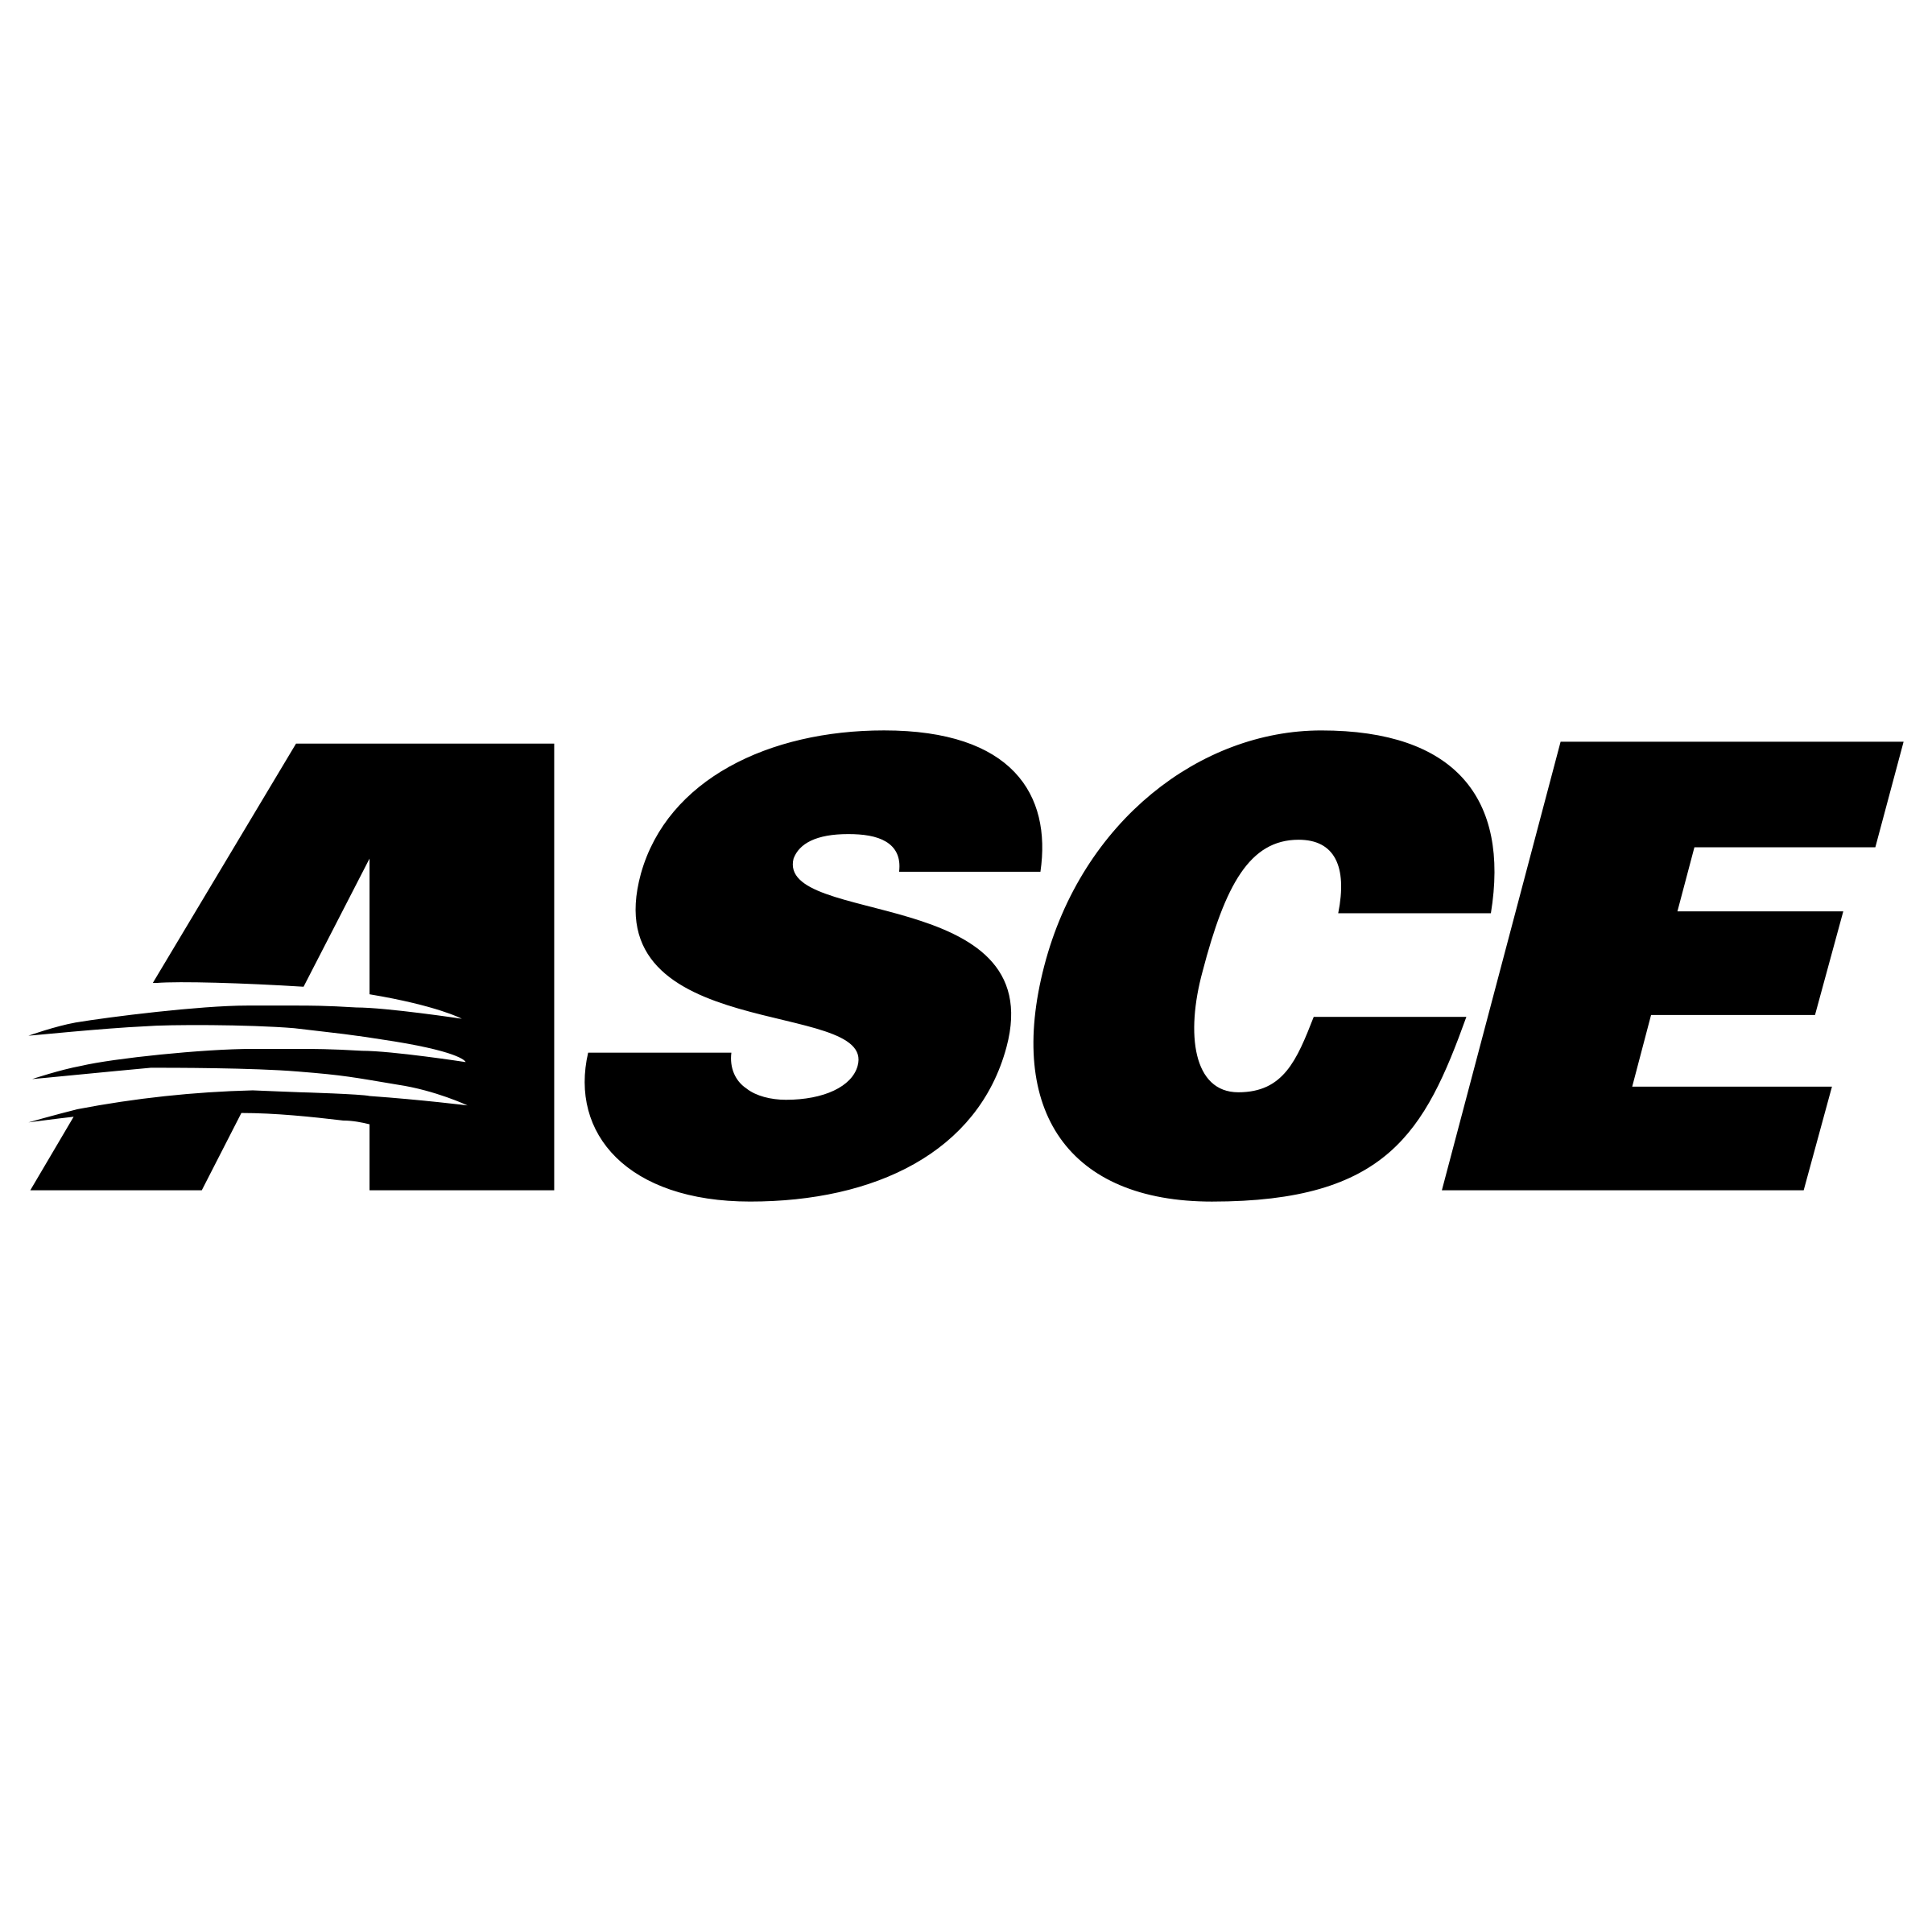 asce-1-logo-png-transparent